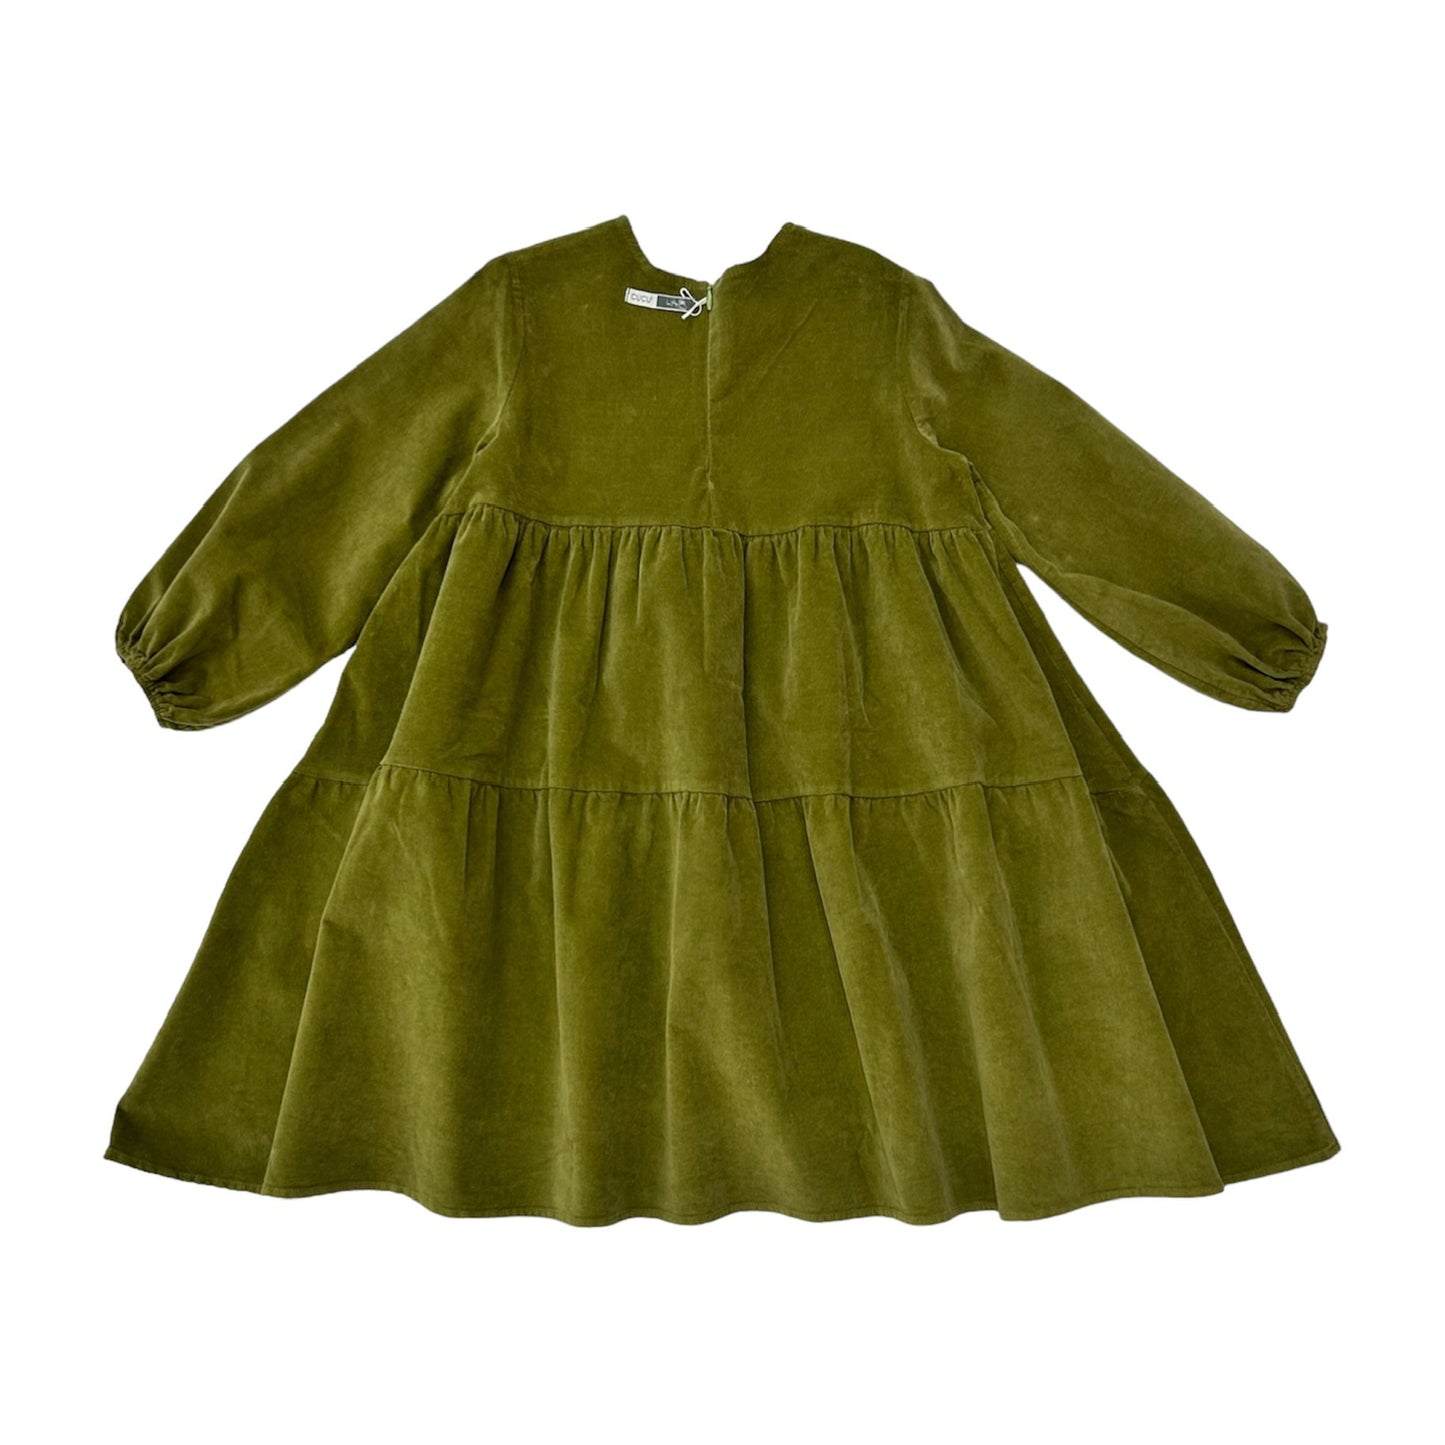 Green velvet ruffled dress